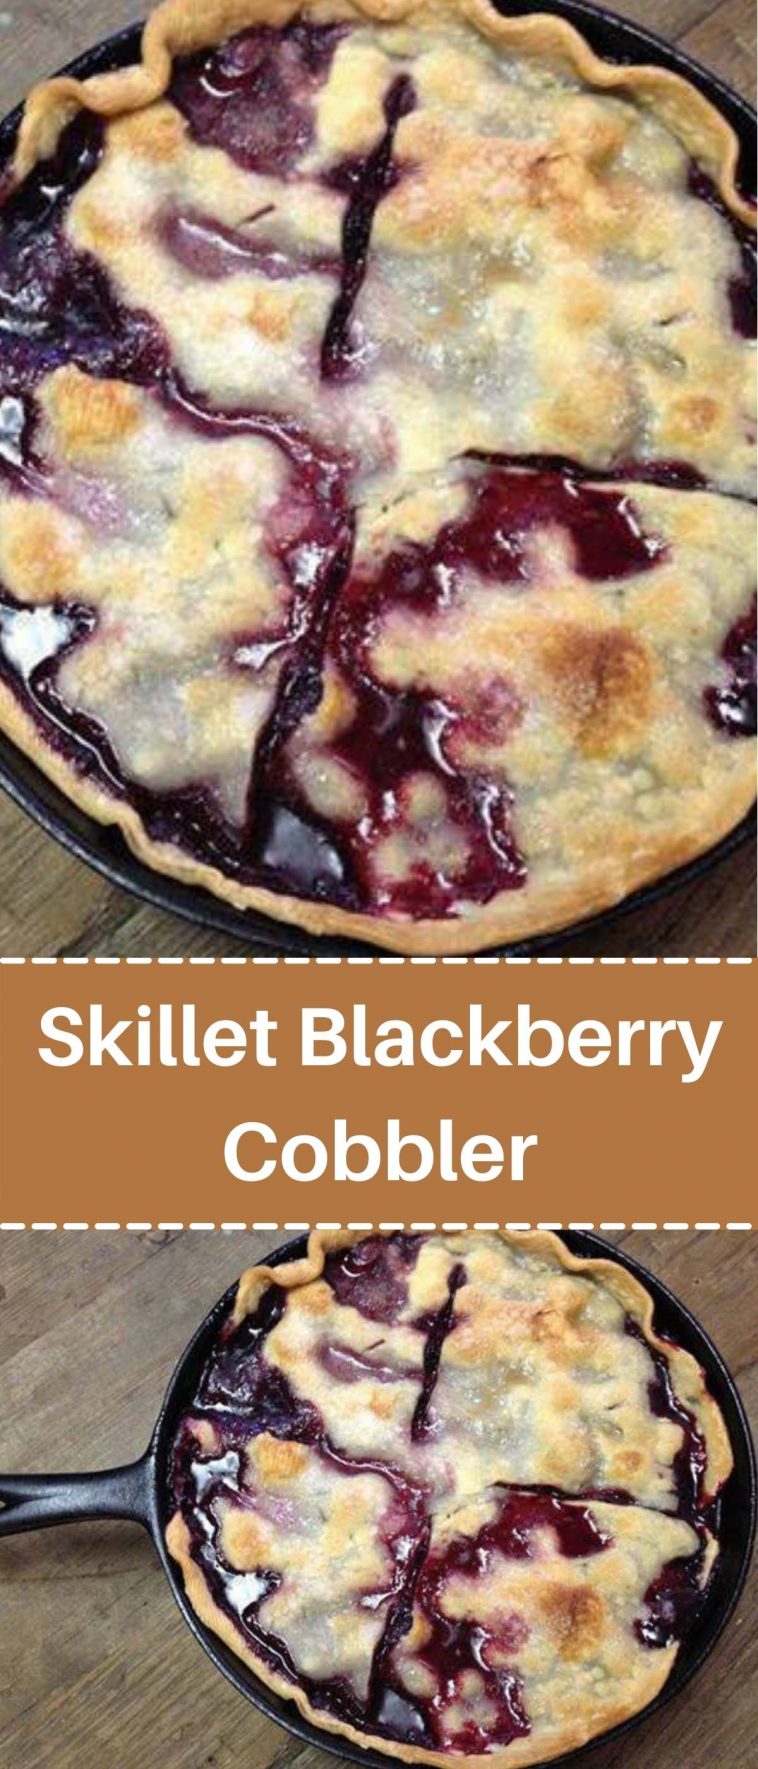 Skillet Blackberry Cobbler